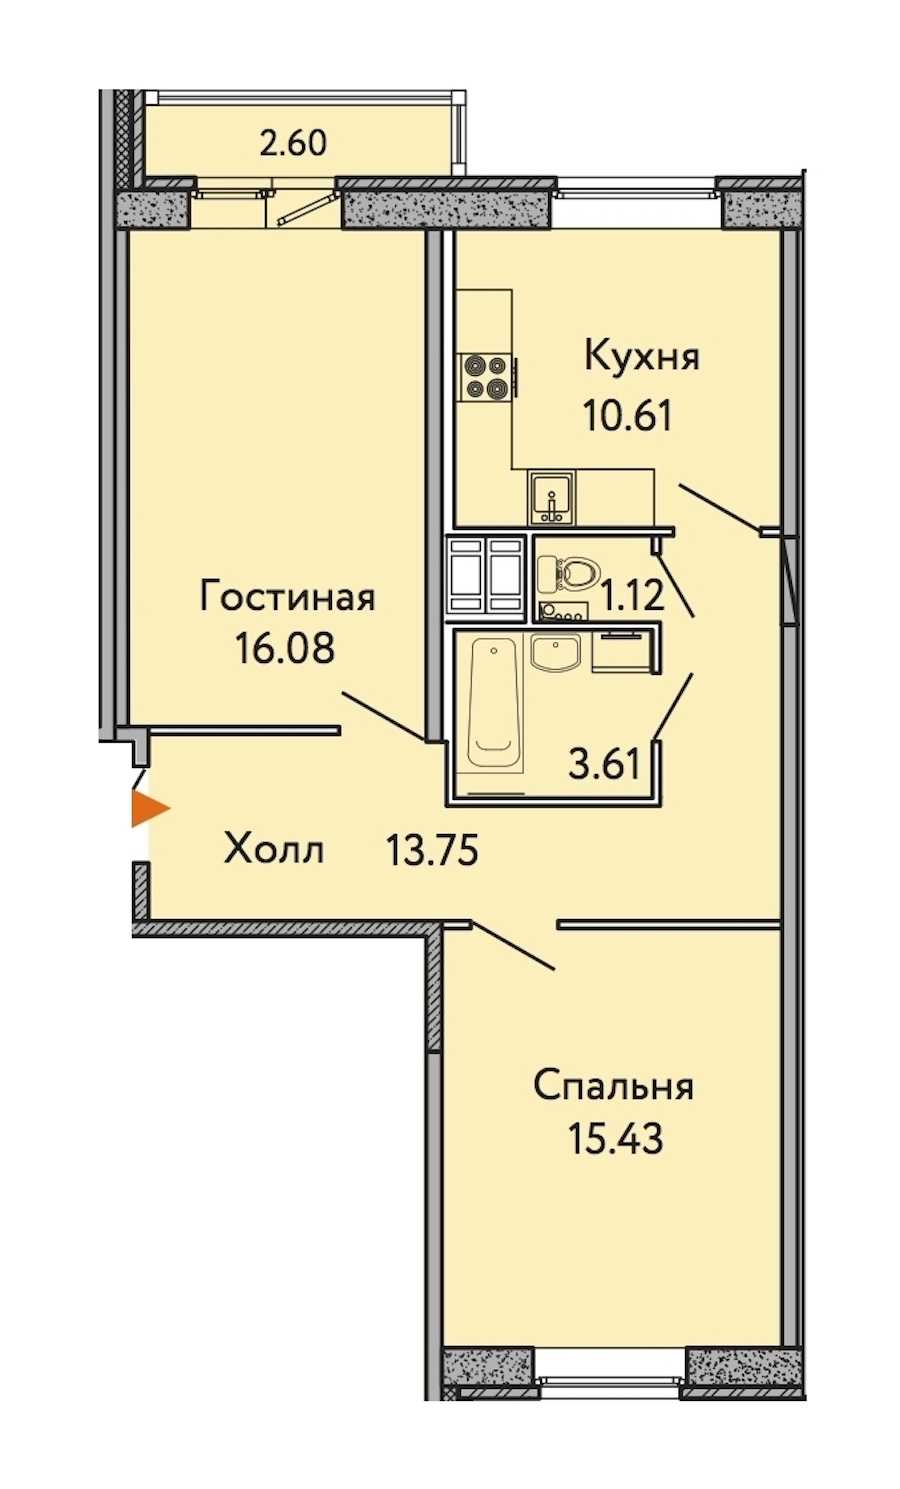 Двухкомнатная квартира в : площадь 61.38 м2 , этаж: 3 – купить в Санкт-Петербурге